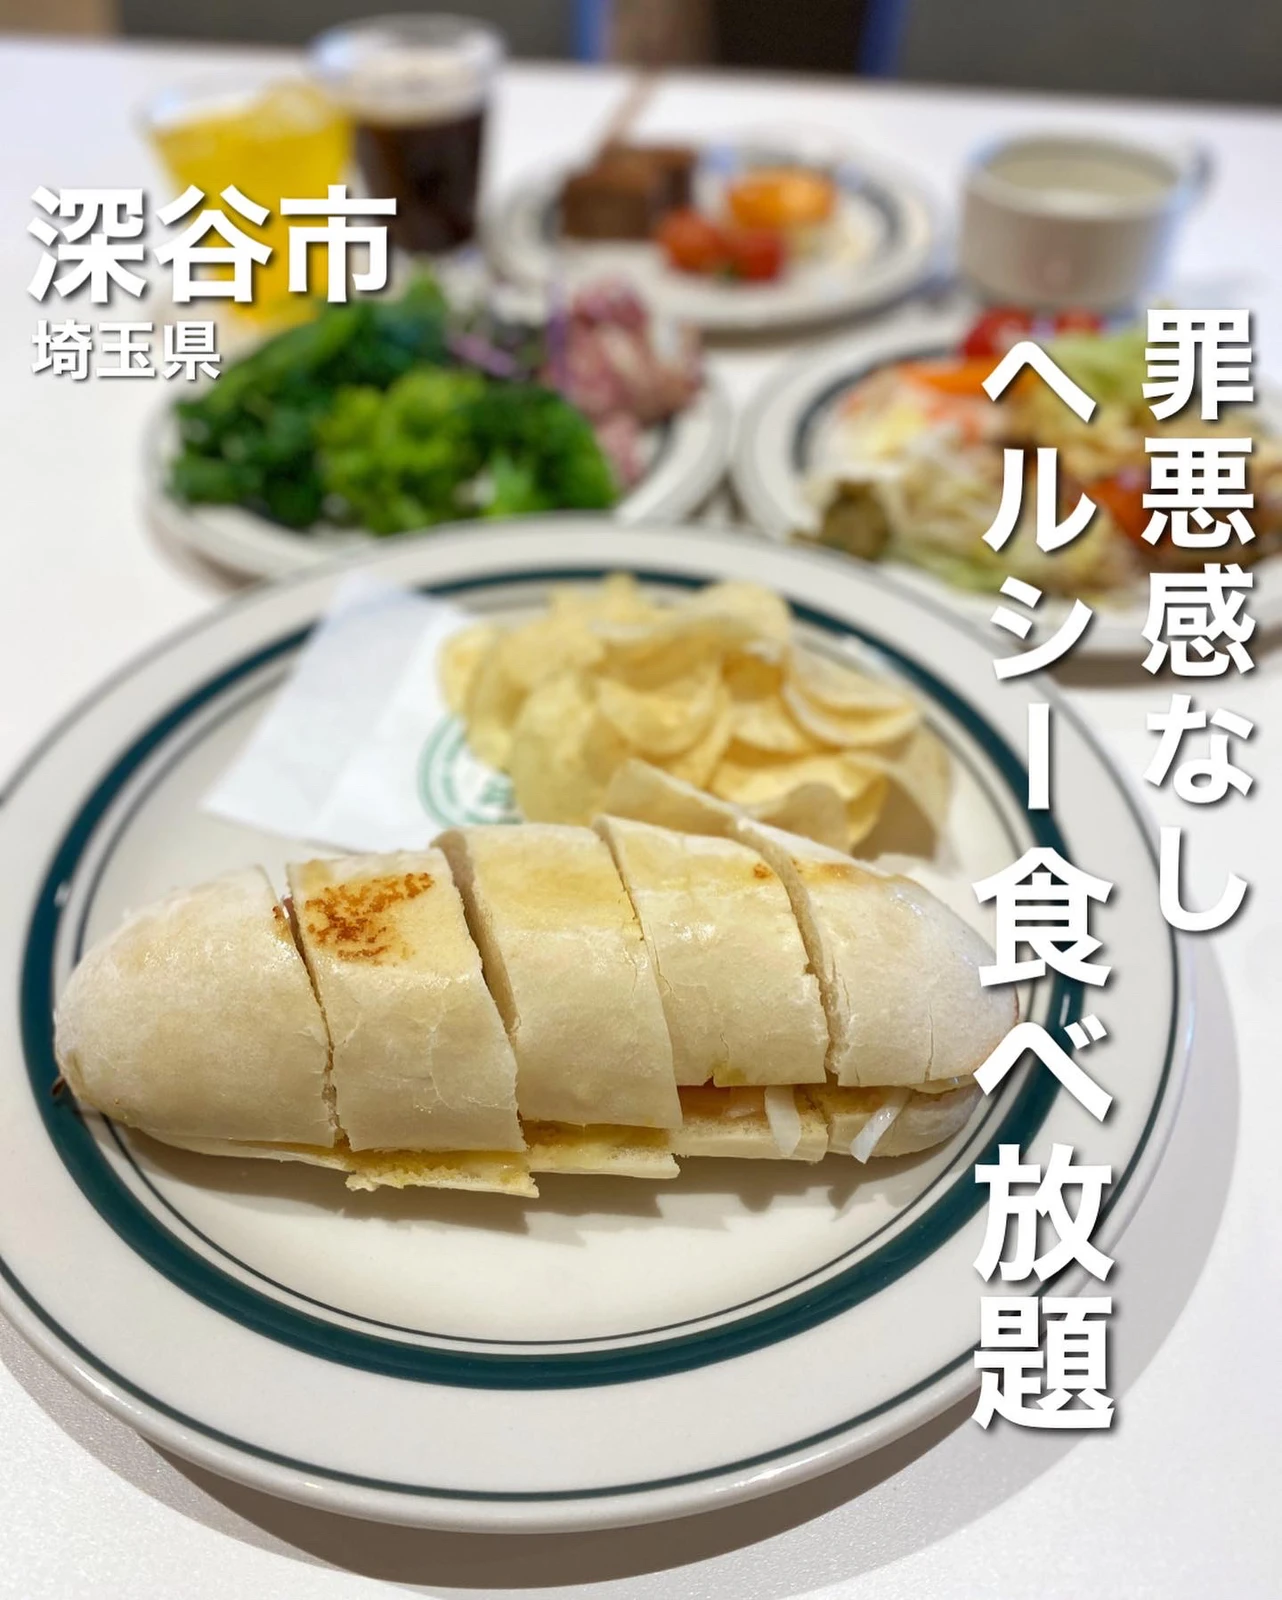 食べ放題 どの料理もサラダビュッフェ付き オシャレ空間でヘルシーランチ 食べて埼玉が投稿したフォトブック Lemon8